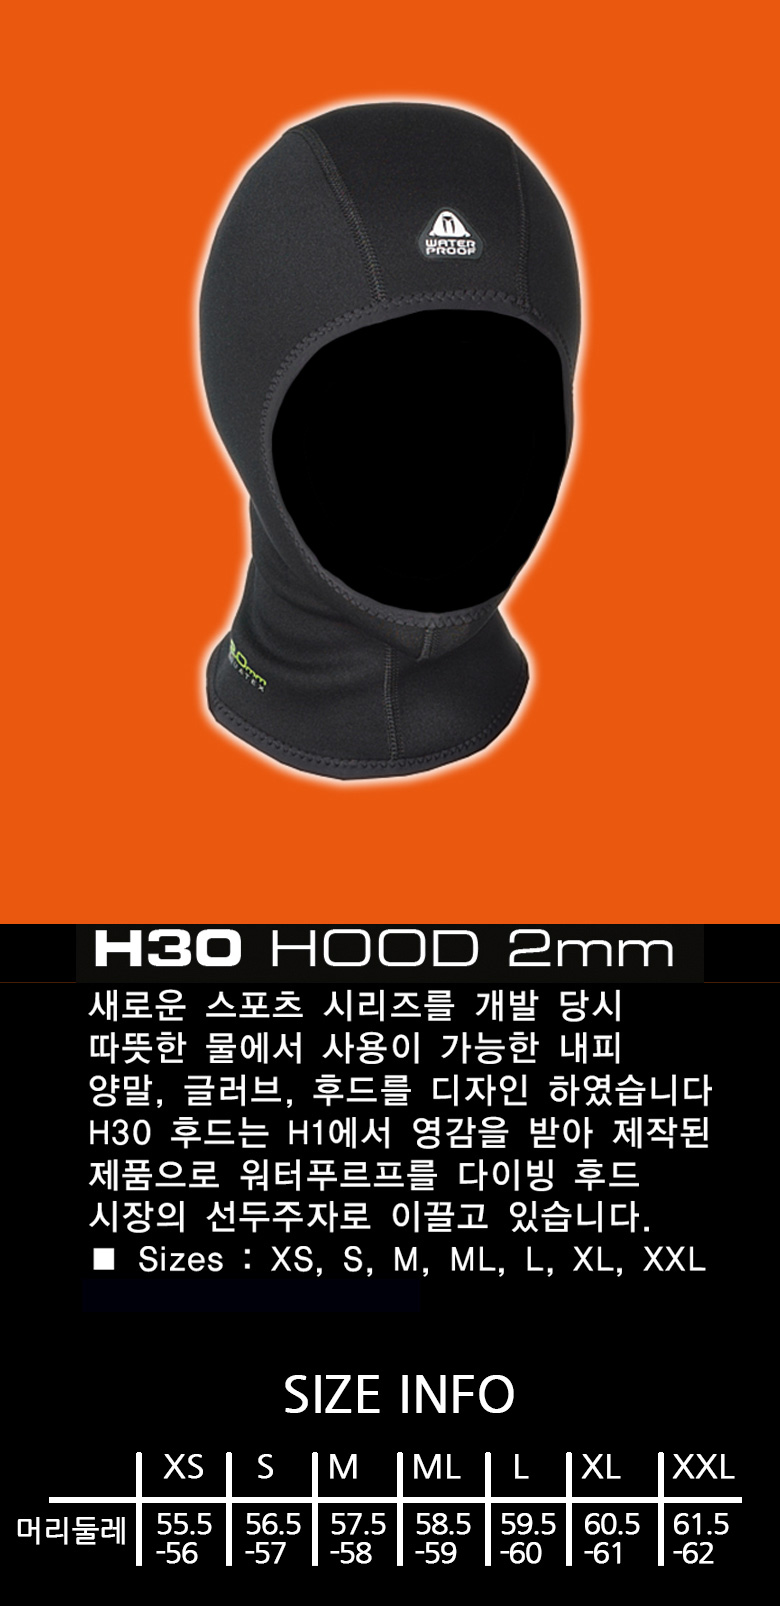 H30_Hood_2mm_d.jpg